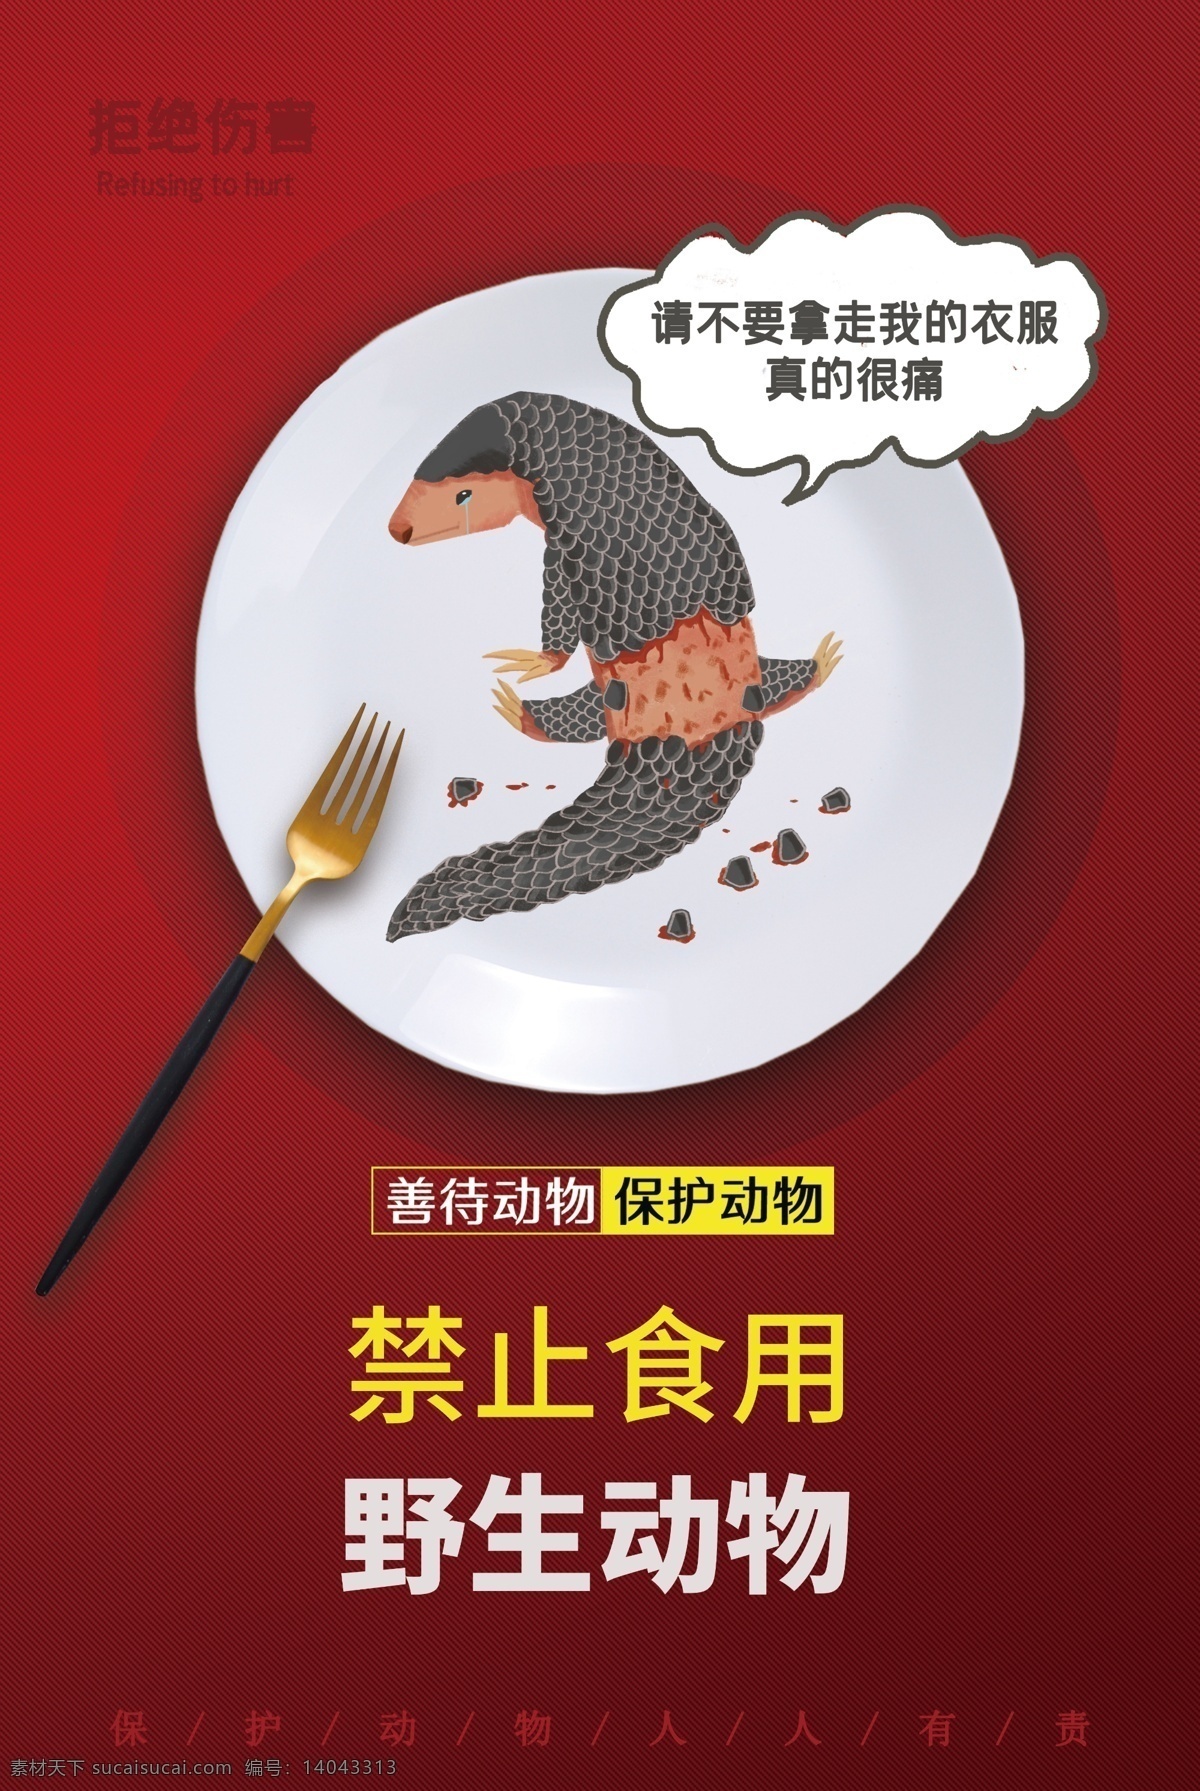 禁止 食用 野生动物 公益 宣传海报 宣传 海报 社会